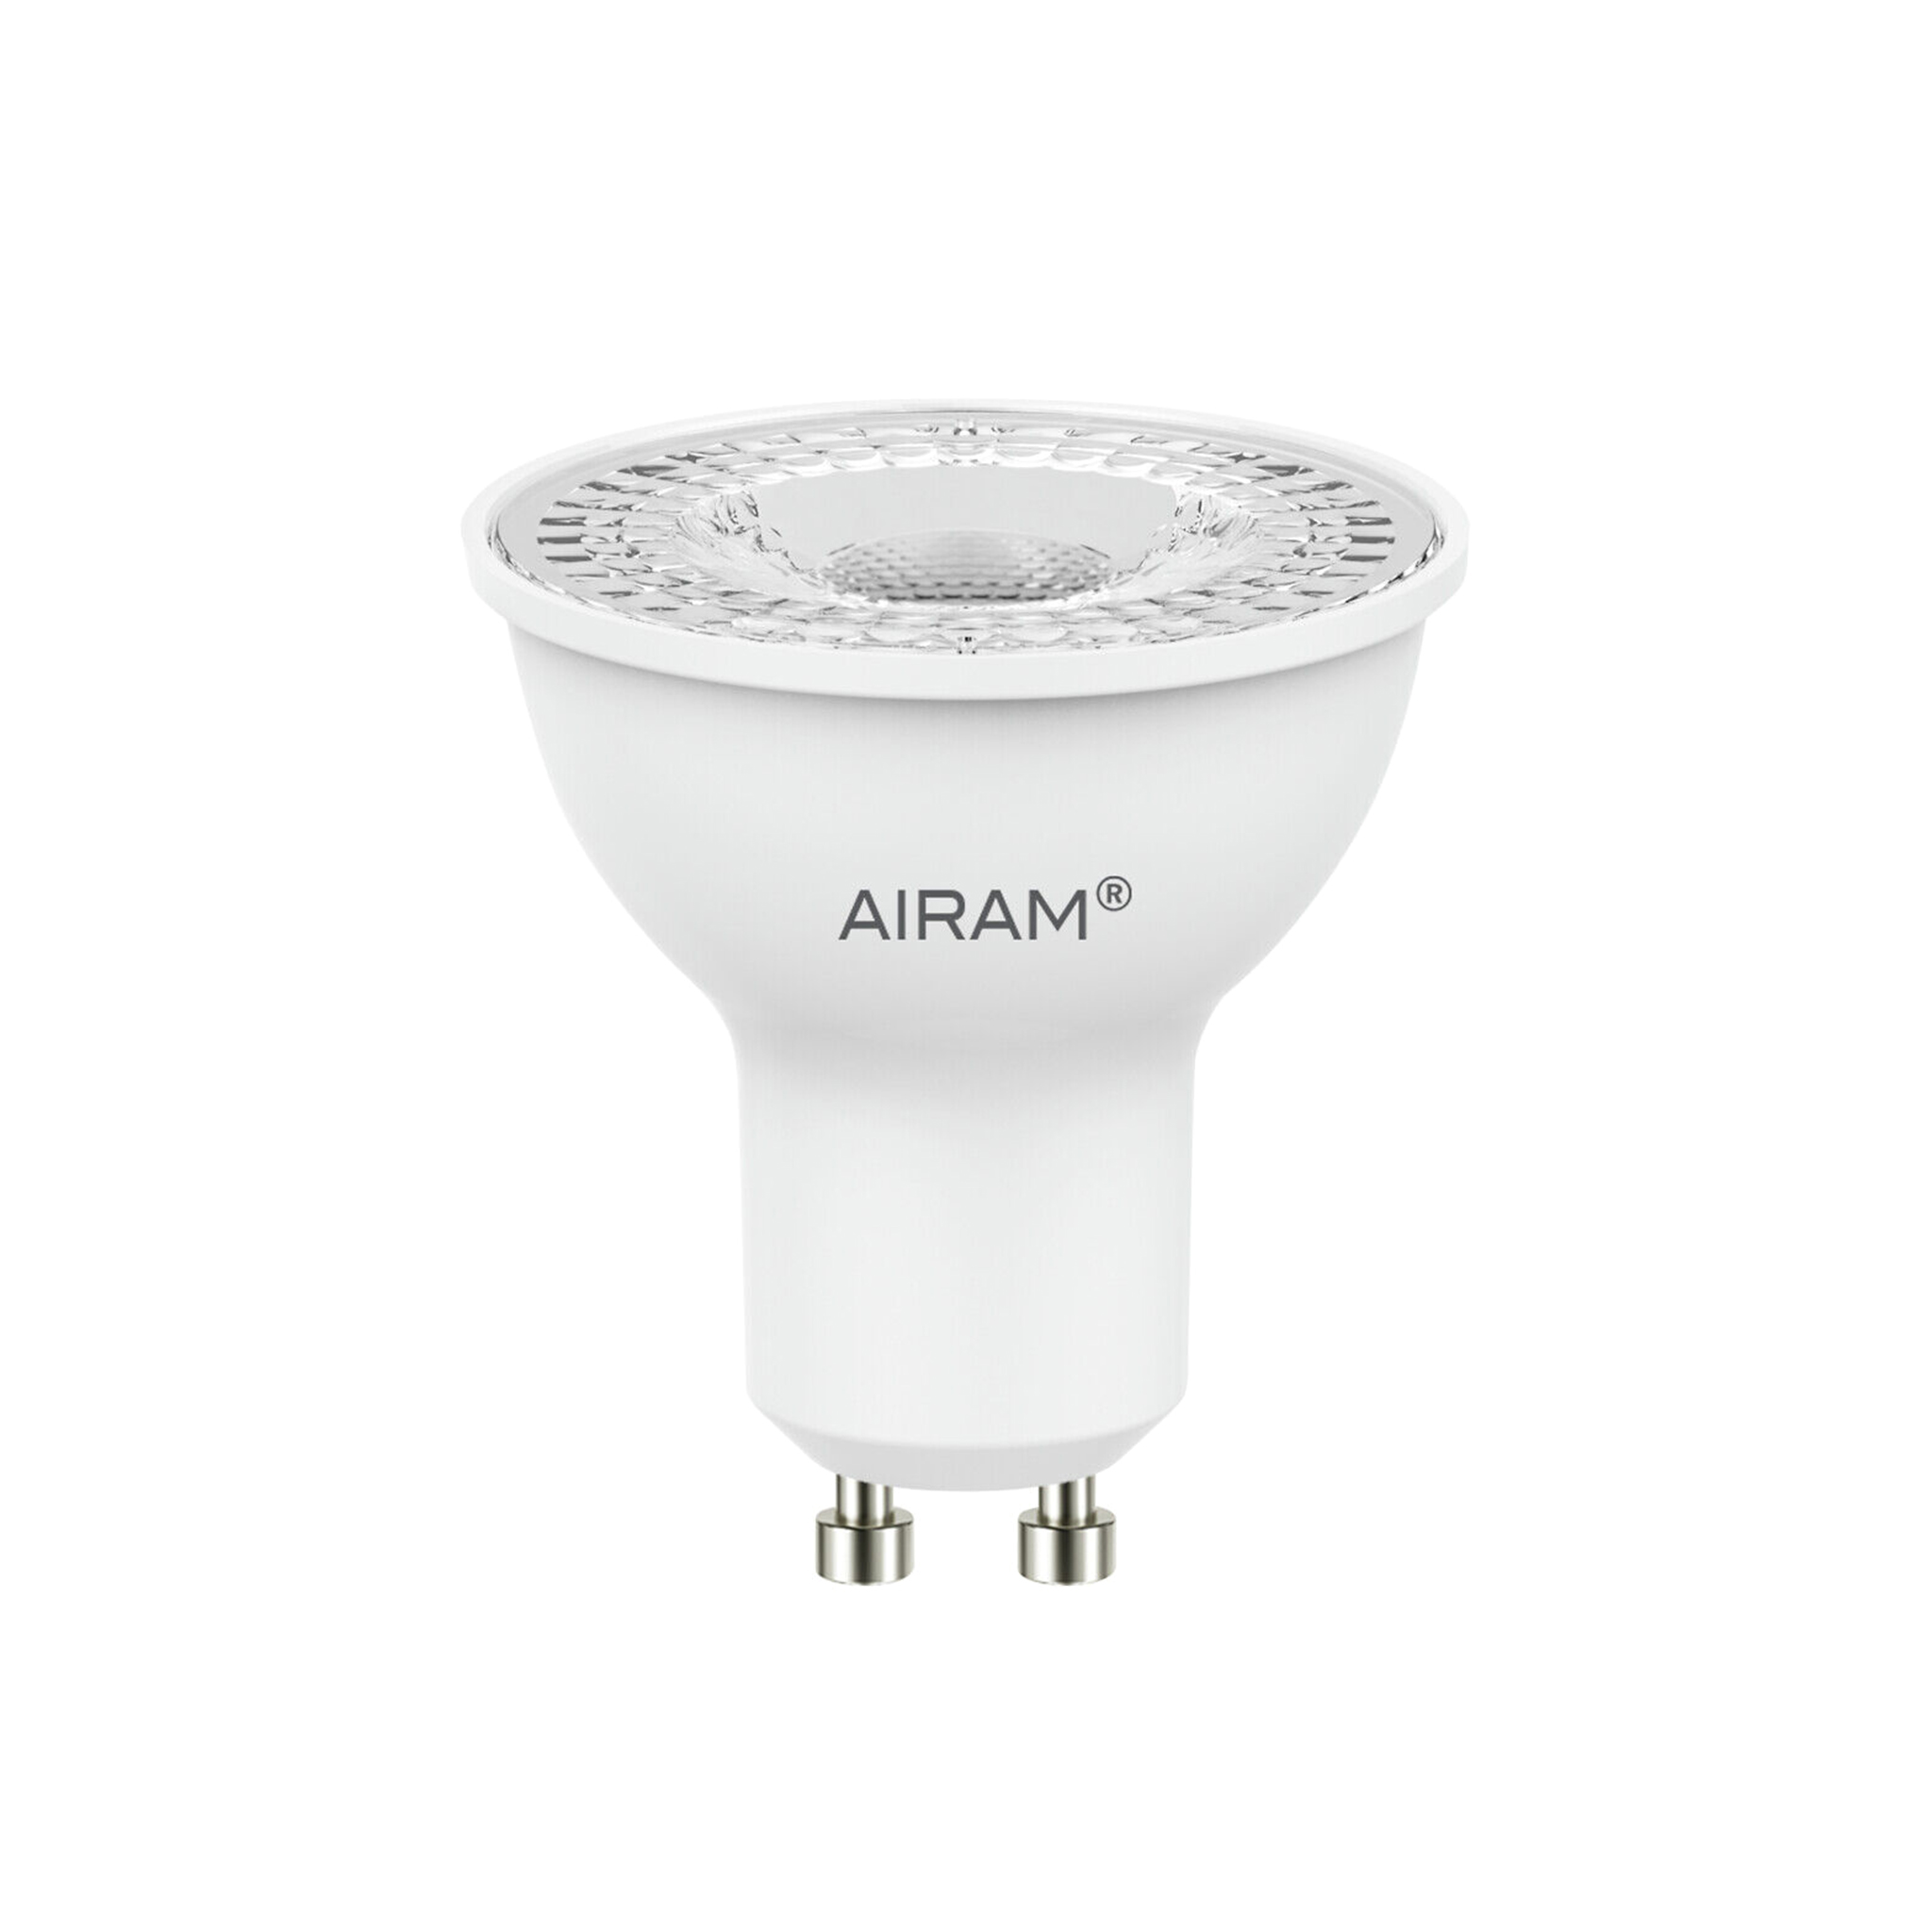 LED-lampa Airam GU10 PAR16 - 2700K / 5 W / 36°, 1 st